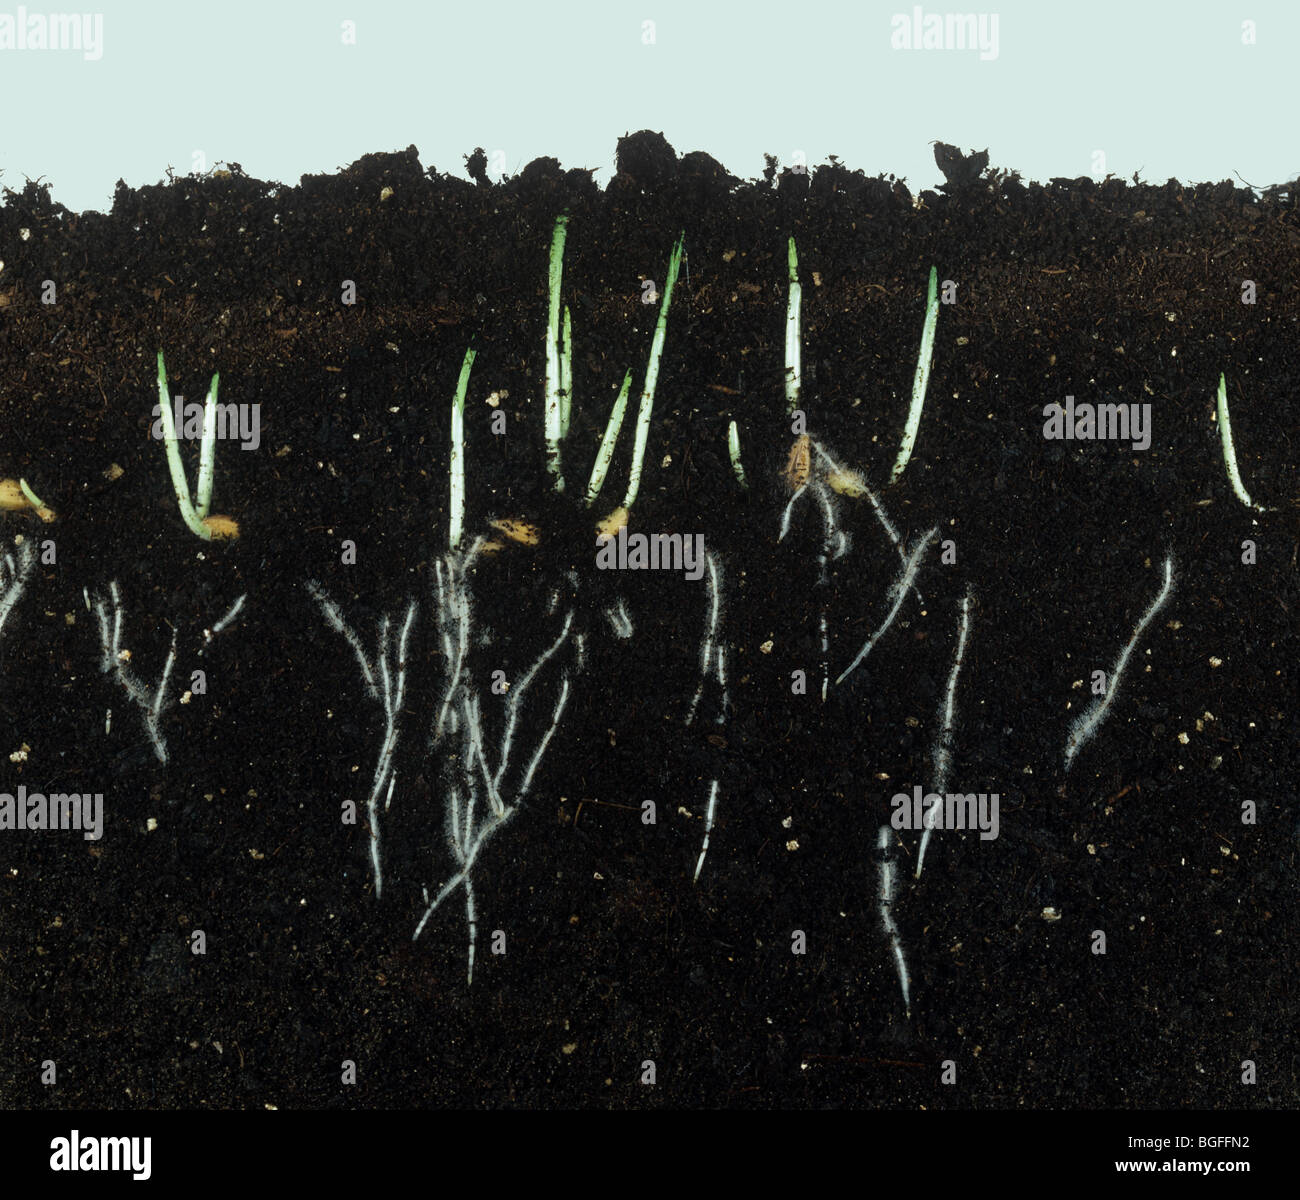 Cebada germinando semillas muestran los retoños jóvenes y desarrollo de la raíz. Foto de stock